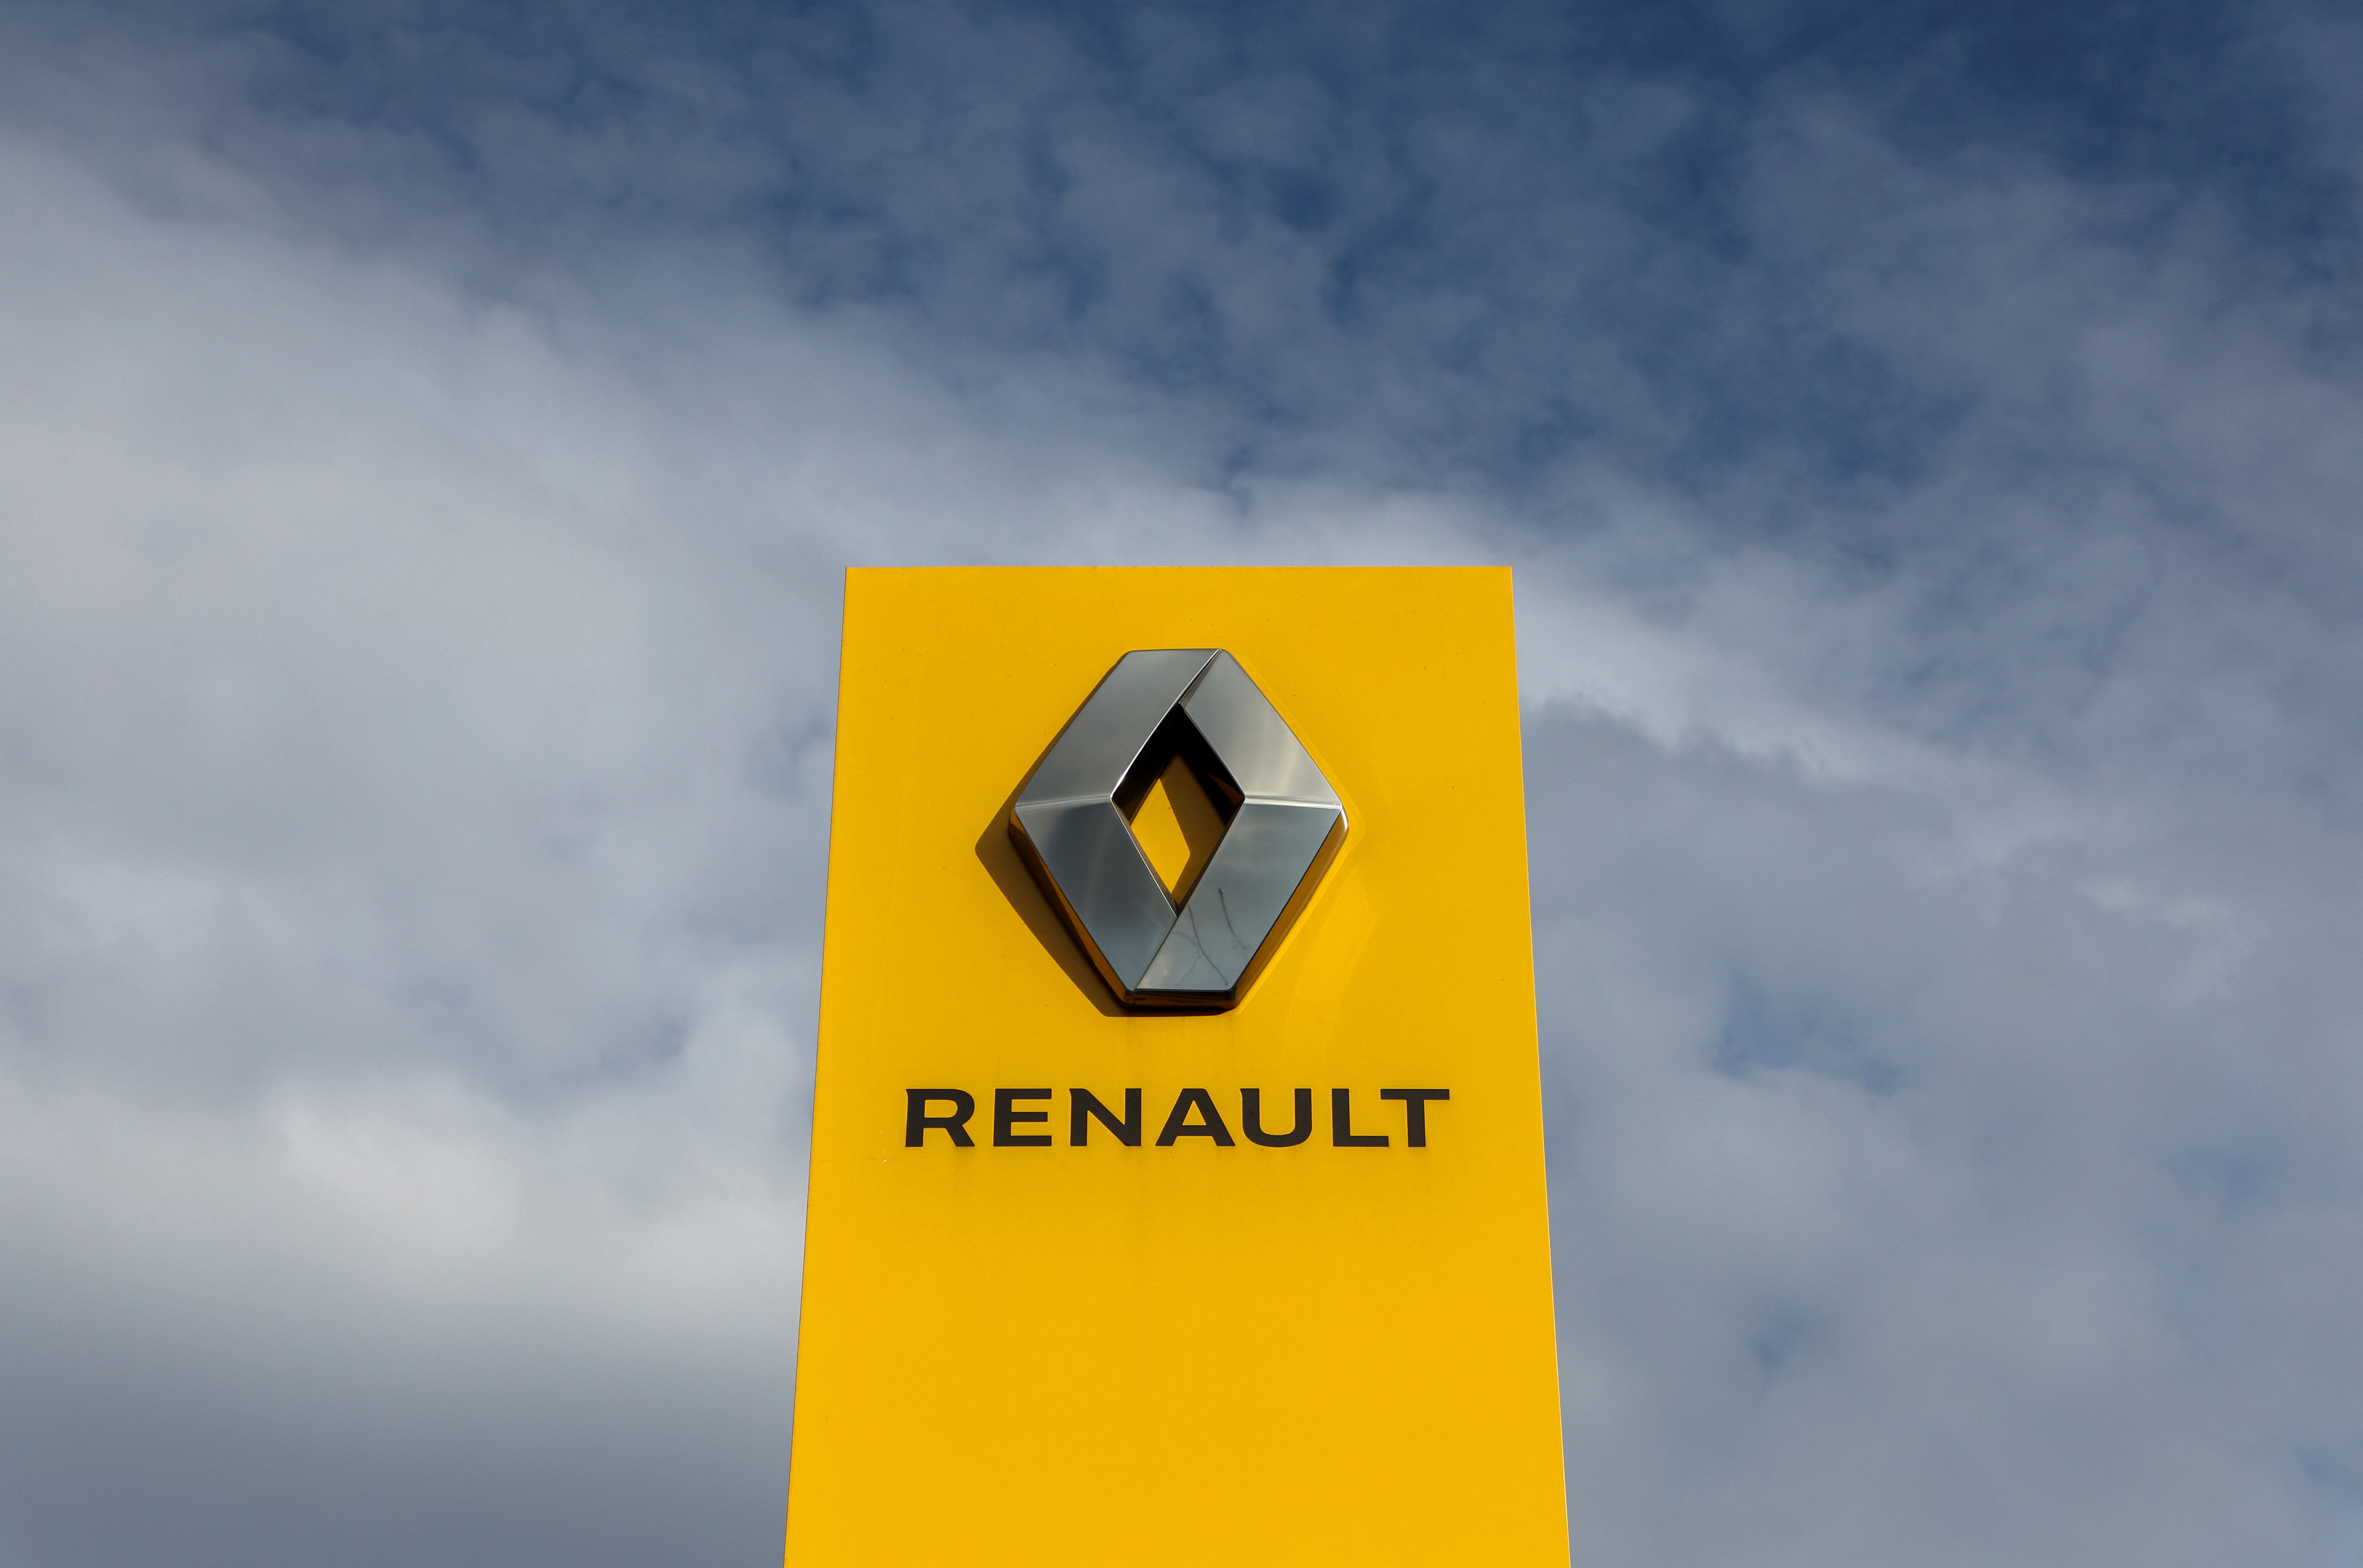 Chiffre d'affaires en hausse pour Renault malgré son retrait de Russie